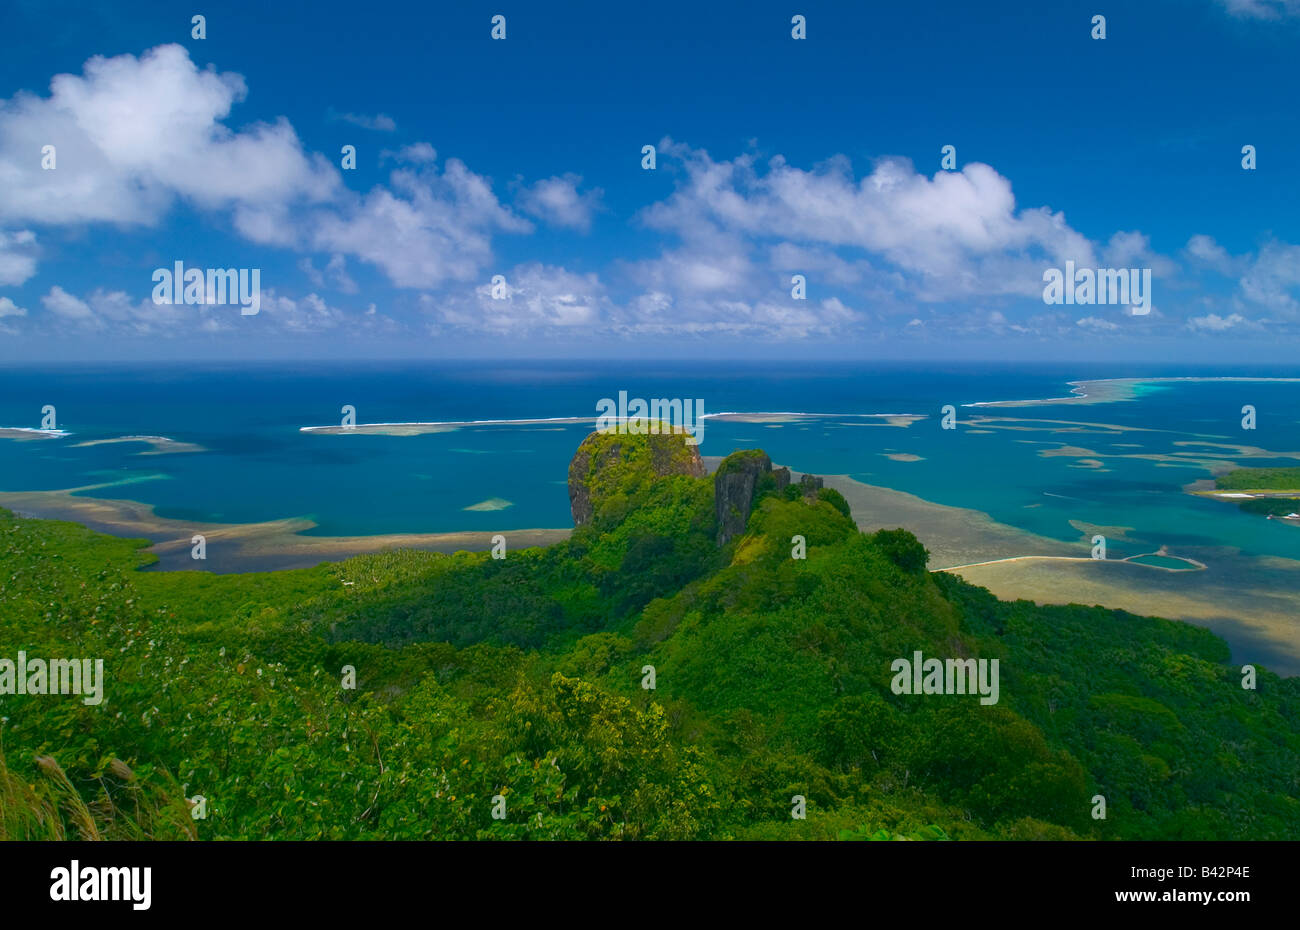 La isla de Pohnpei Caroline Islas del Pacífico Islas Senyavin Pohnpei, Micronesia Foto de stock